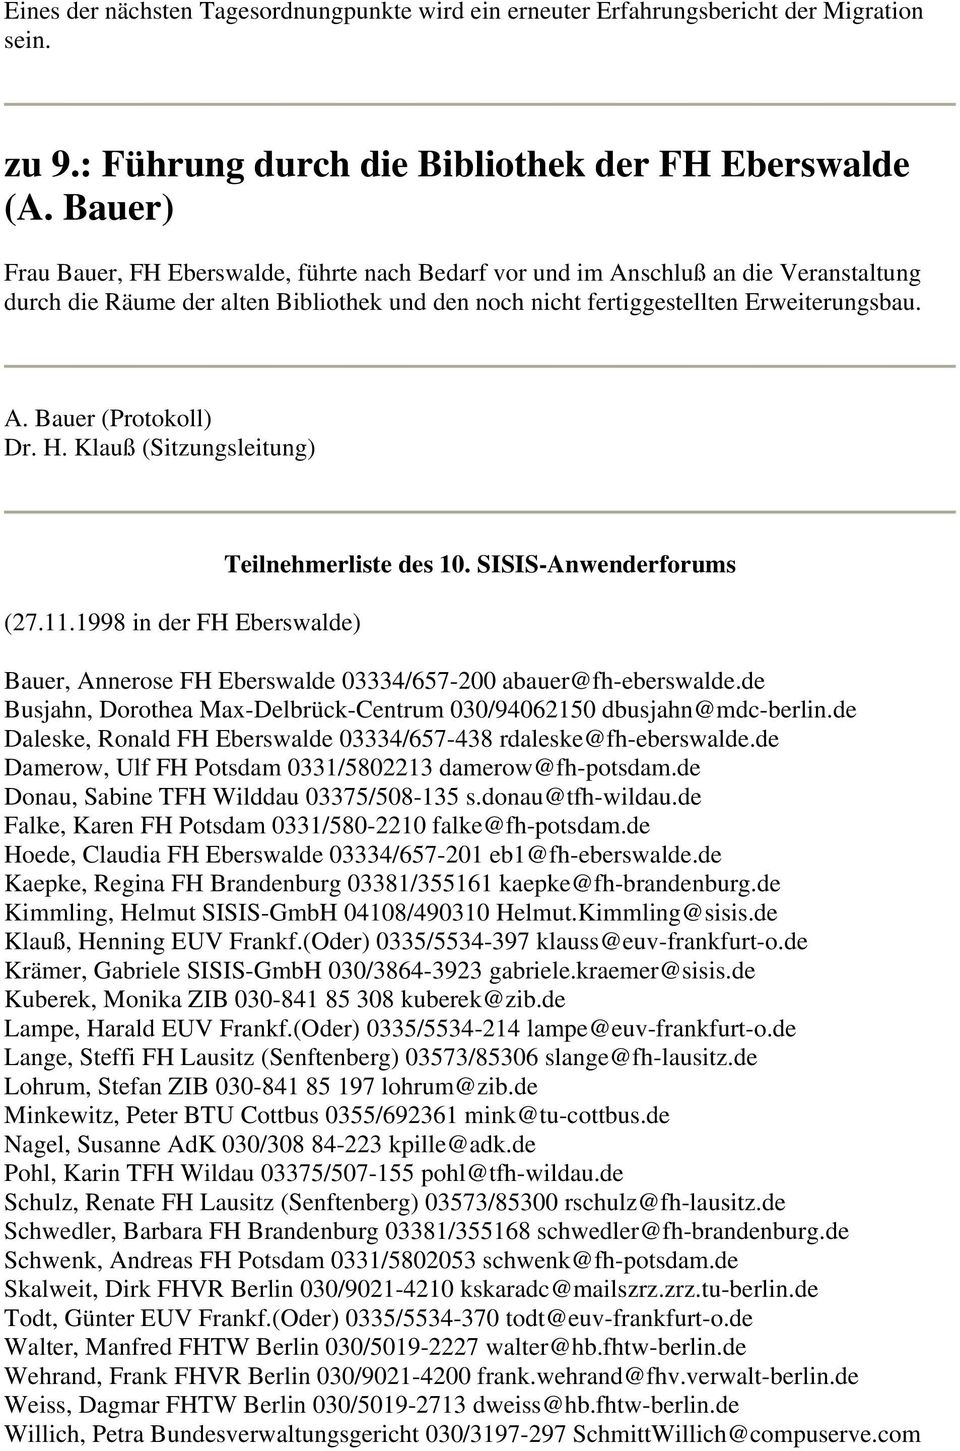 H. Klauß (Sitzungsleitung) (27.11.1998 in der FH Eberswalde) Teilnehmerliste des 10. SISIS-Anwenderforums Bauer, Annerose FH Eberswalde 03334/657-200 abauer@fh-eberswalde.